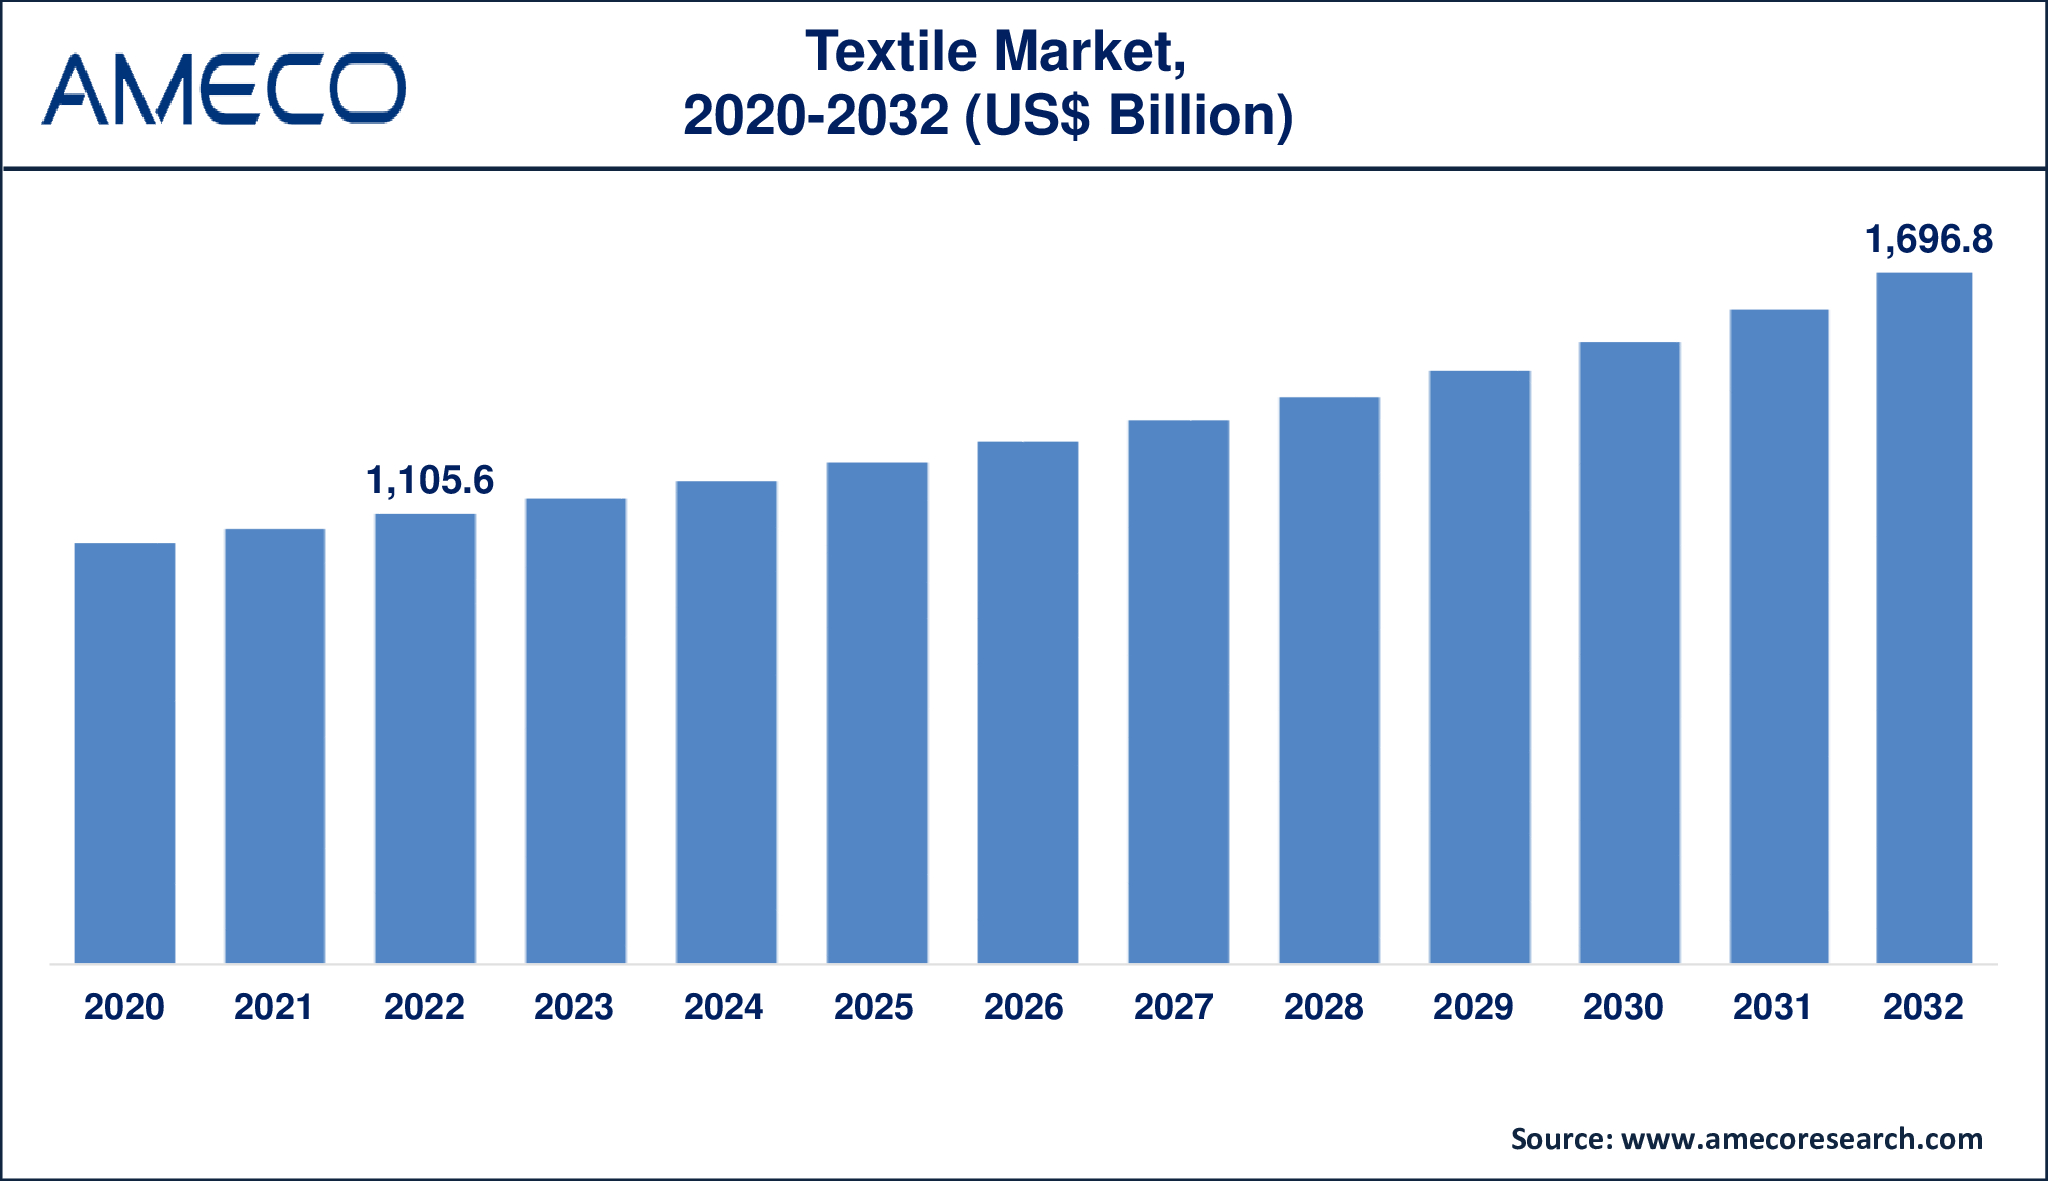 Textile Market Dynamics